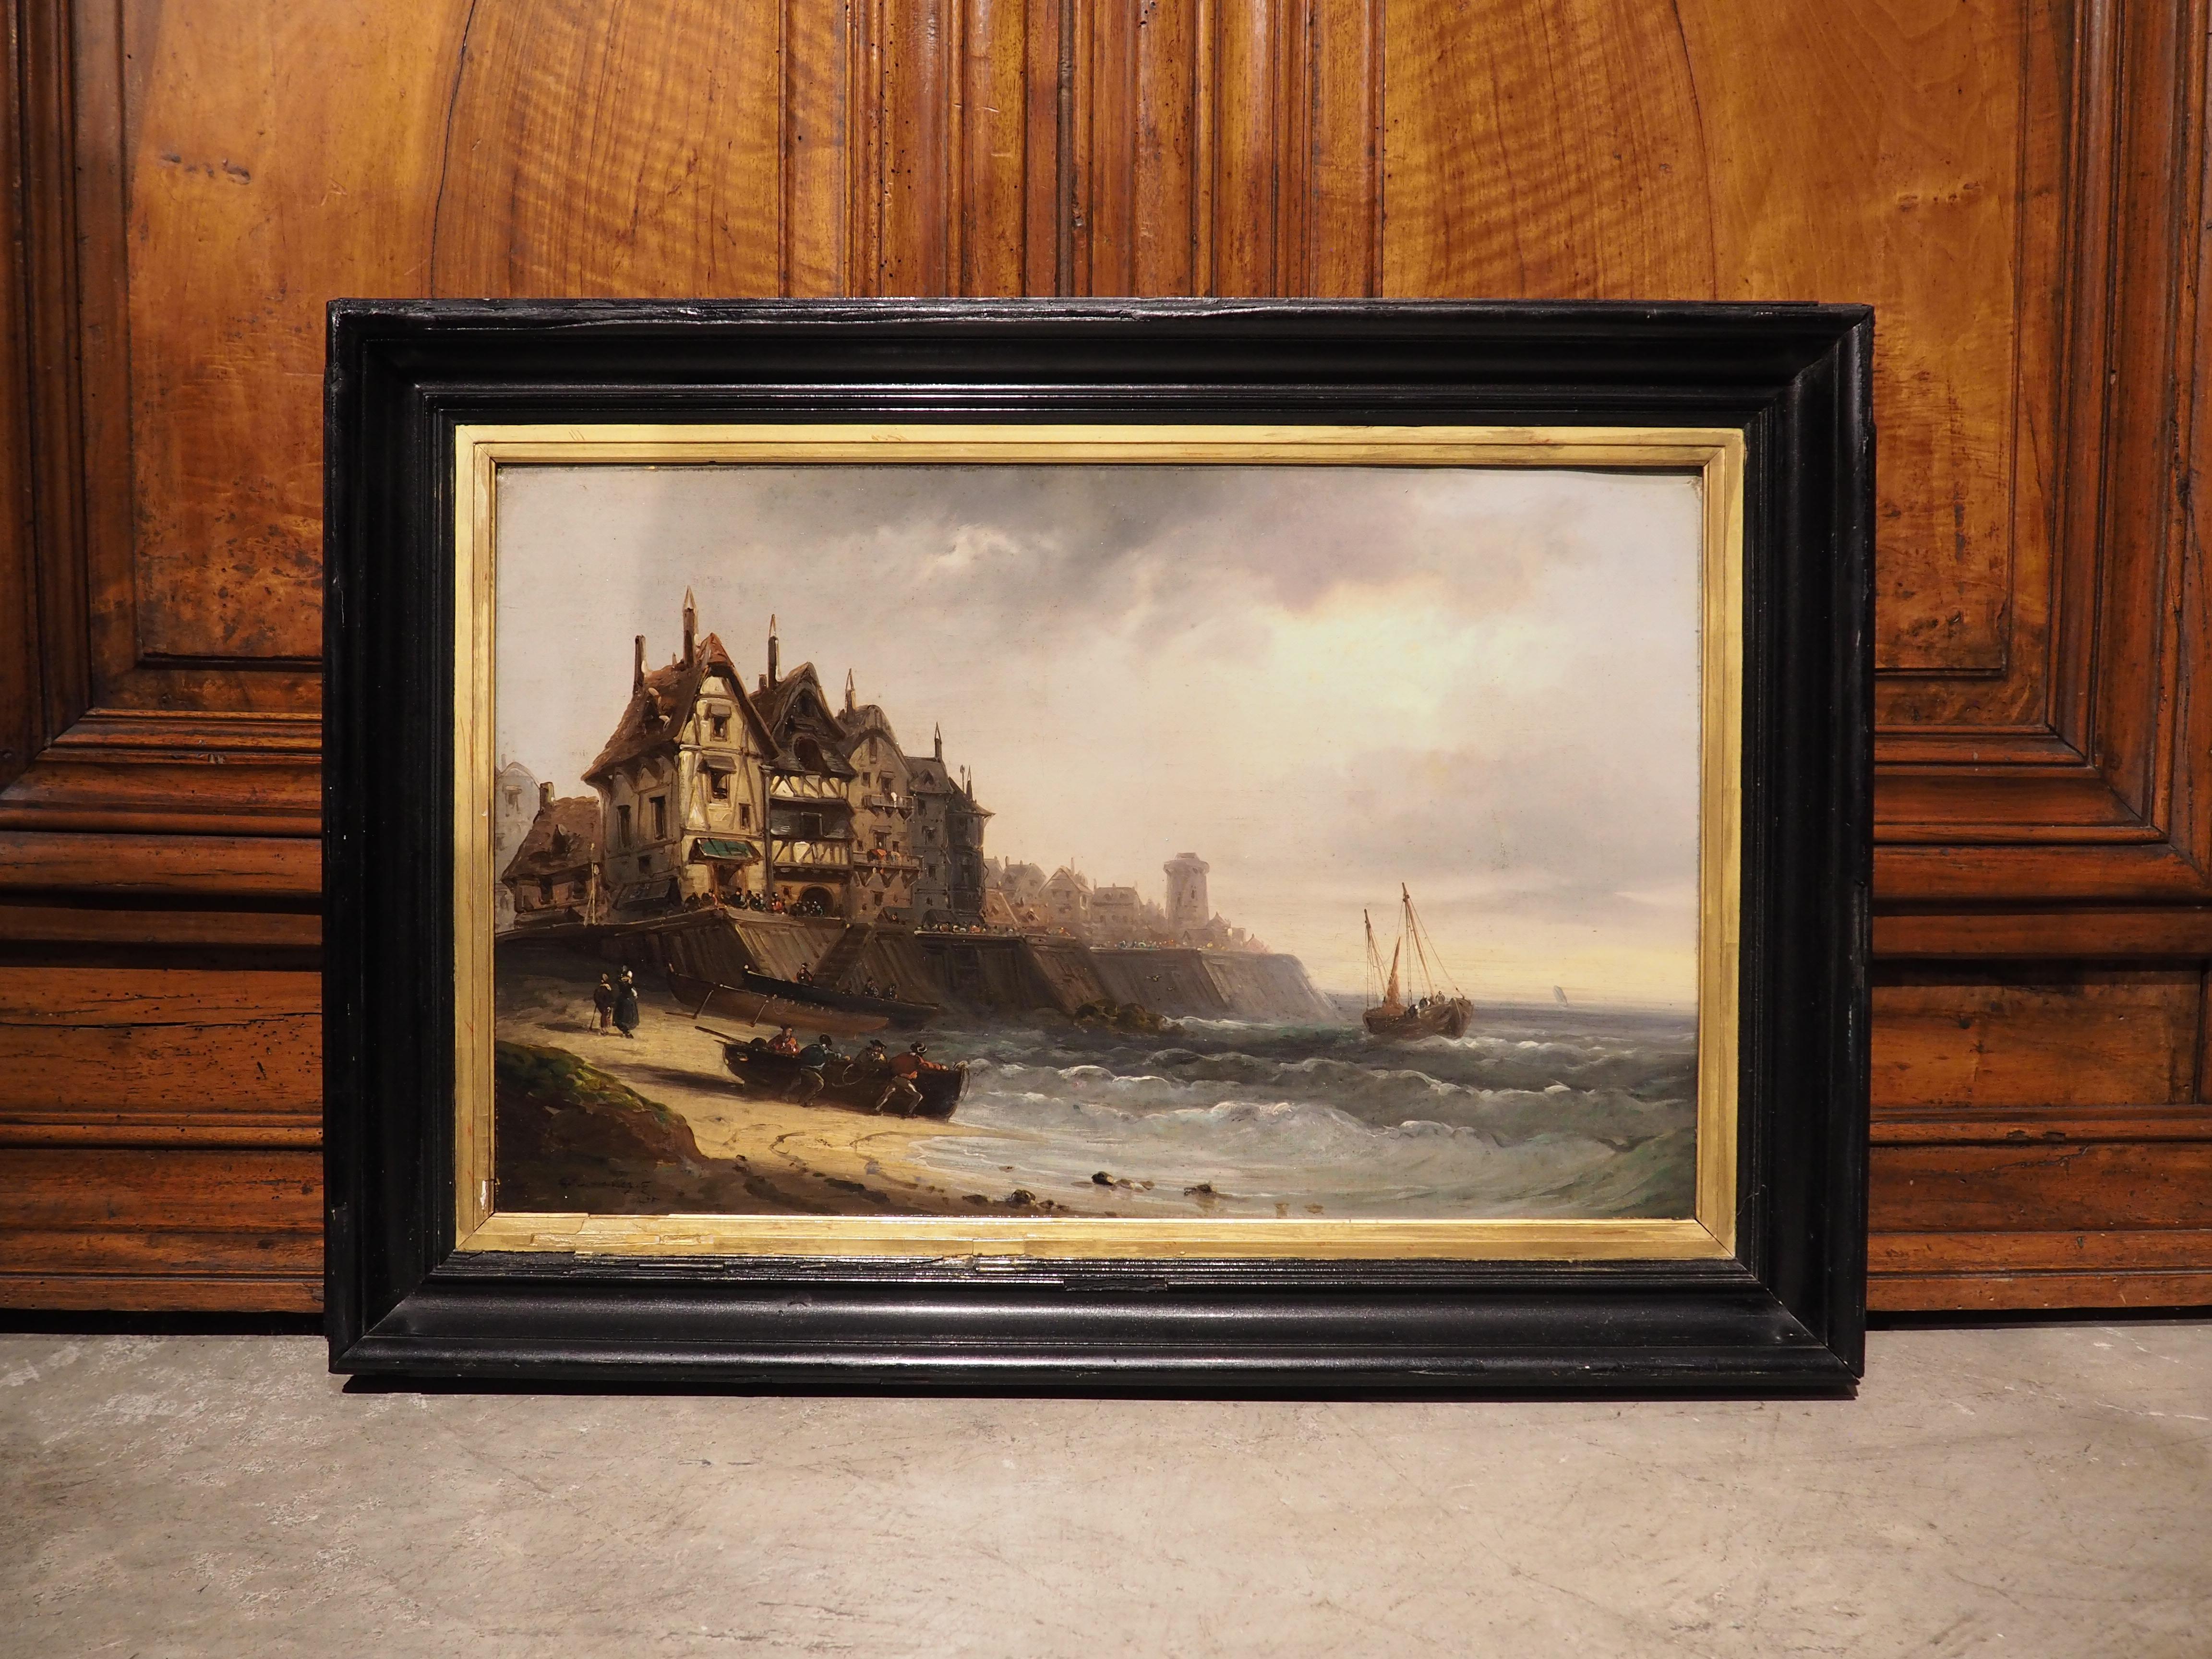 Inspiré par ses voyages en tant que marin, le peintre français Charles Kuwasseg a peint cet impressionnant paysage côtier dans les années 1870 (la toile est signée et datée dans le coin inférieur gauche). Des bâtiments à charpente en bois de